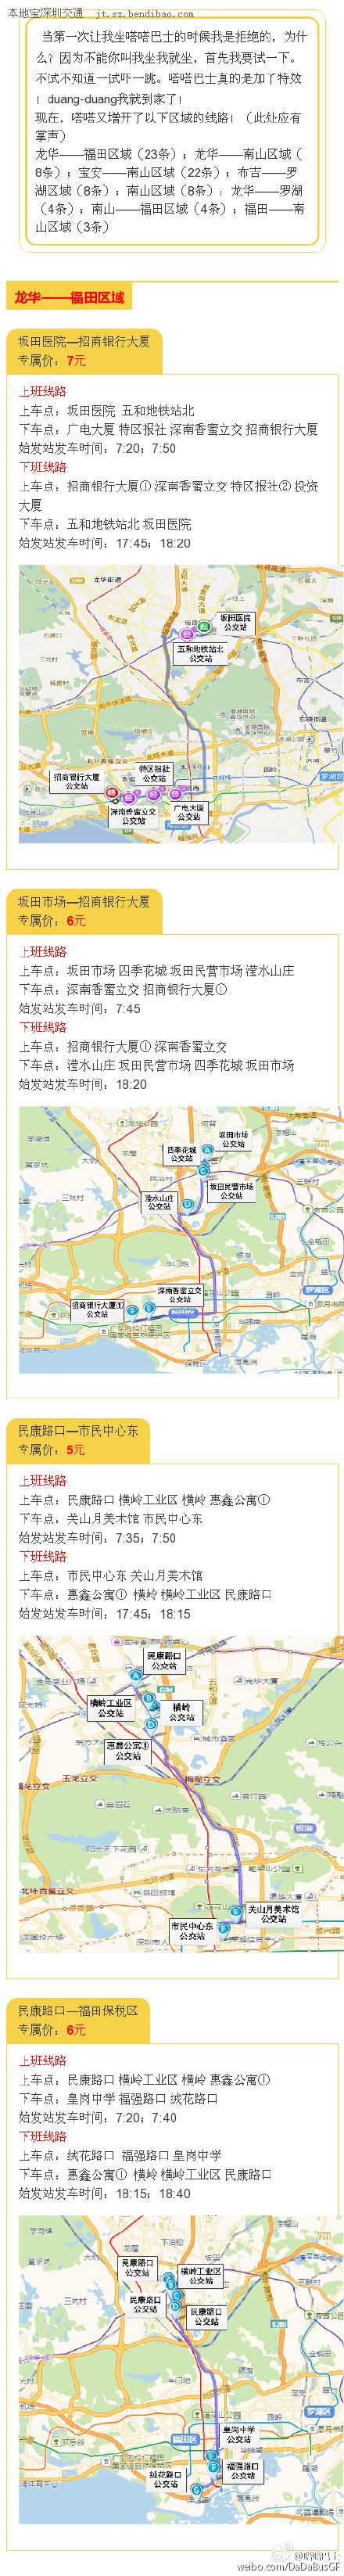 深圳嗒嗒巴士路线查询 嗒嗒巴士深圳已开通线路一览